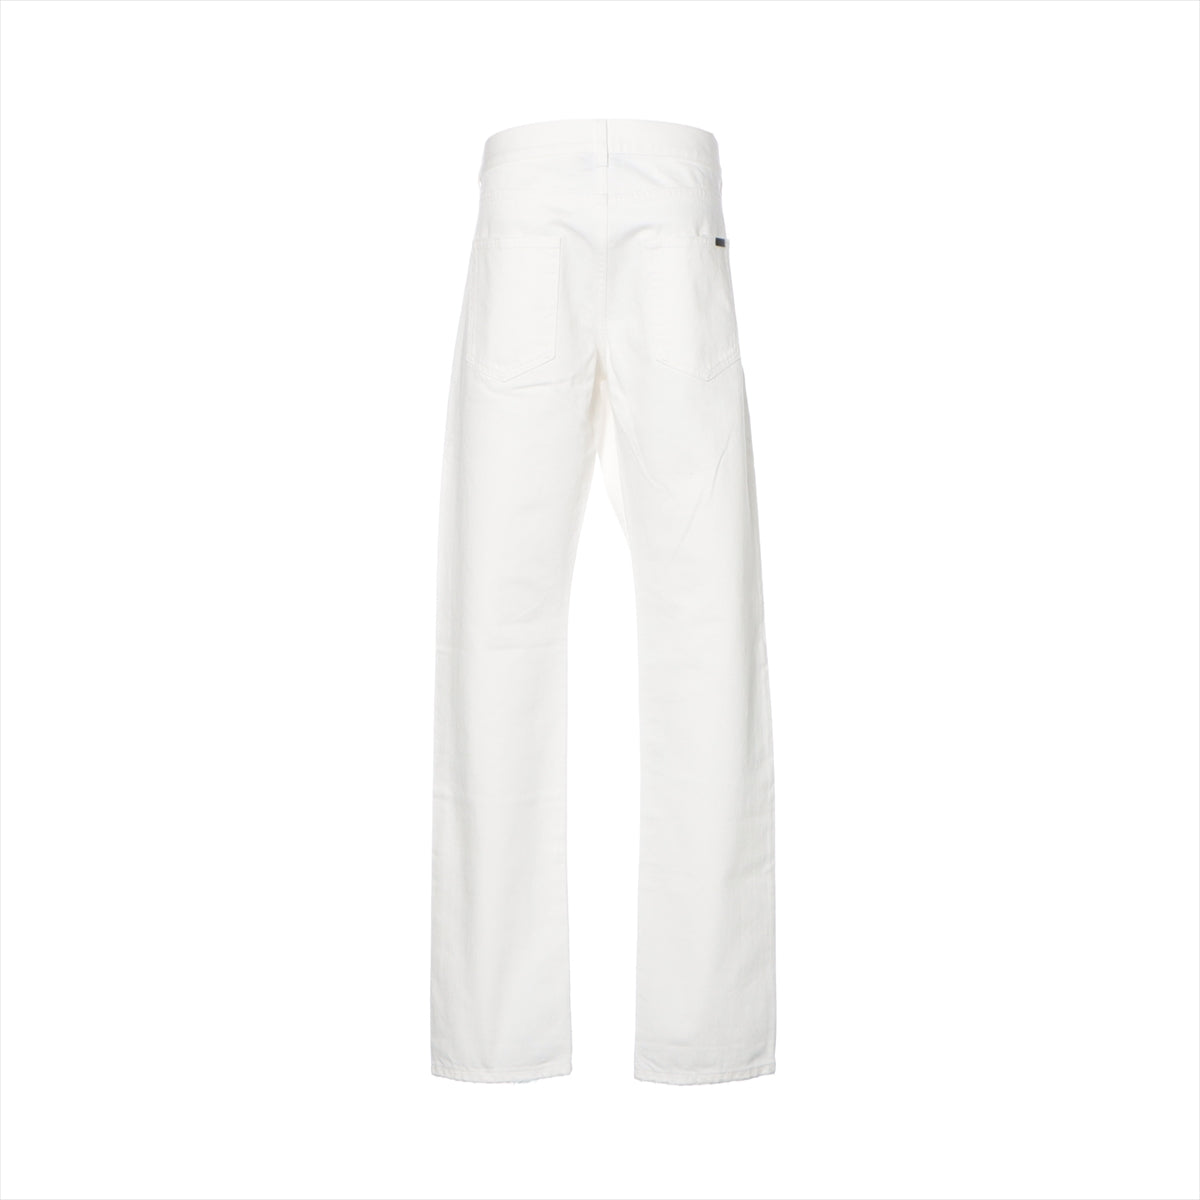 Saint Laurent Paris 21 years Cotton Denim pants 33 Men's White  D21H597052 Damage processing